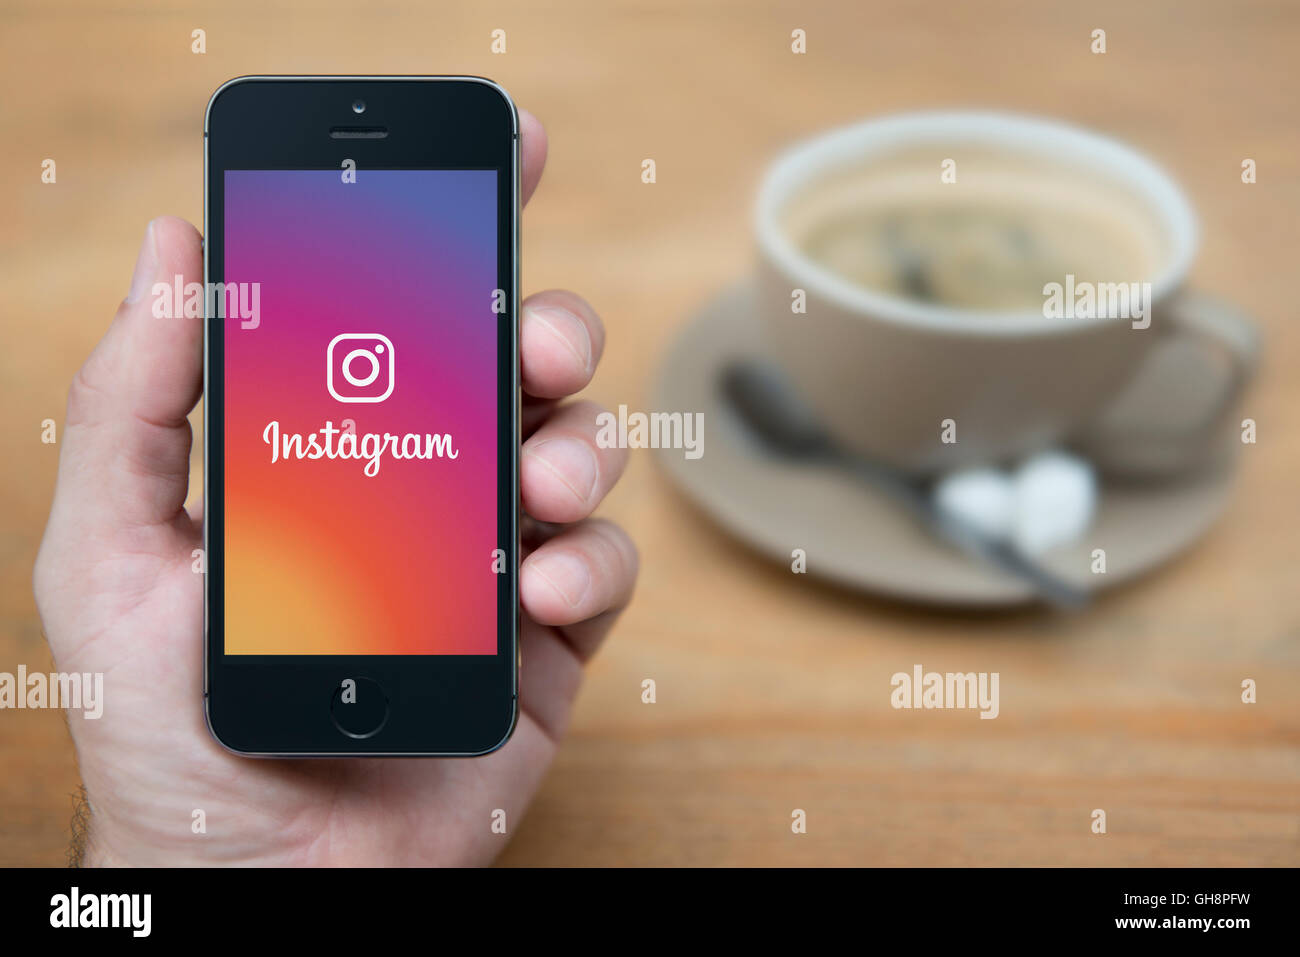 Un hombre mira el iPhone que muestra el logotipo de Instagram, una vez sentado, con una taza de café (uso Editorial solamente). Foto de stock